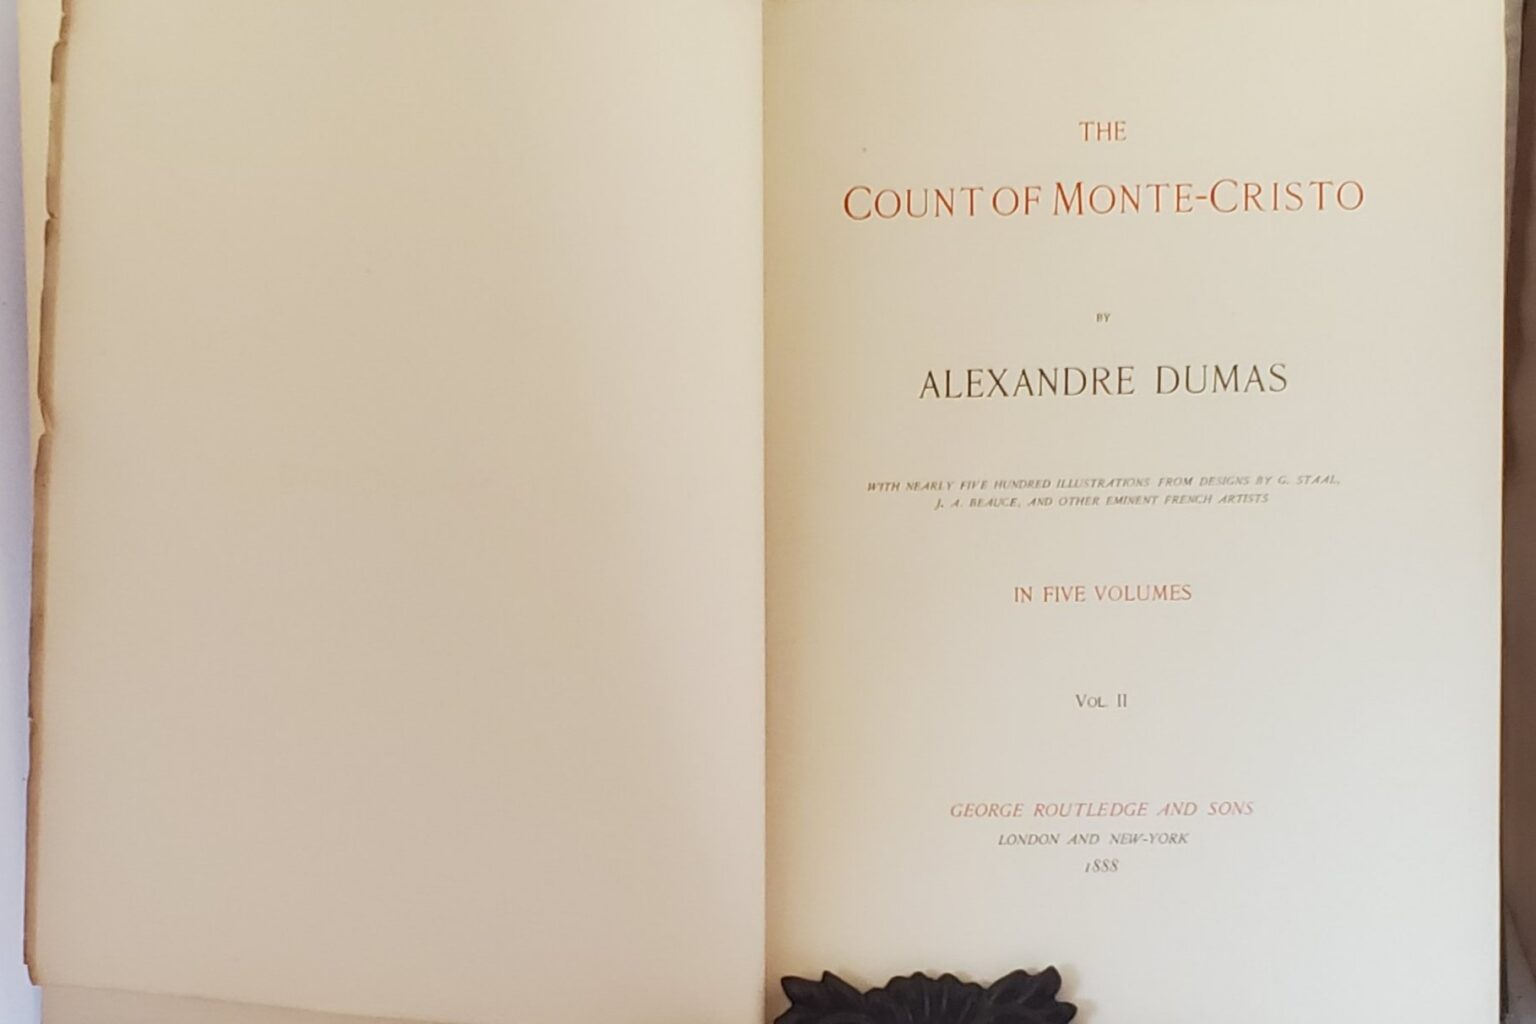 the count of monte cristo book